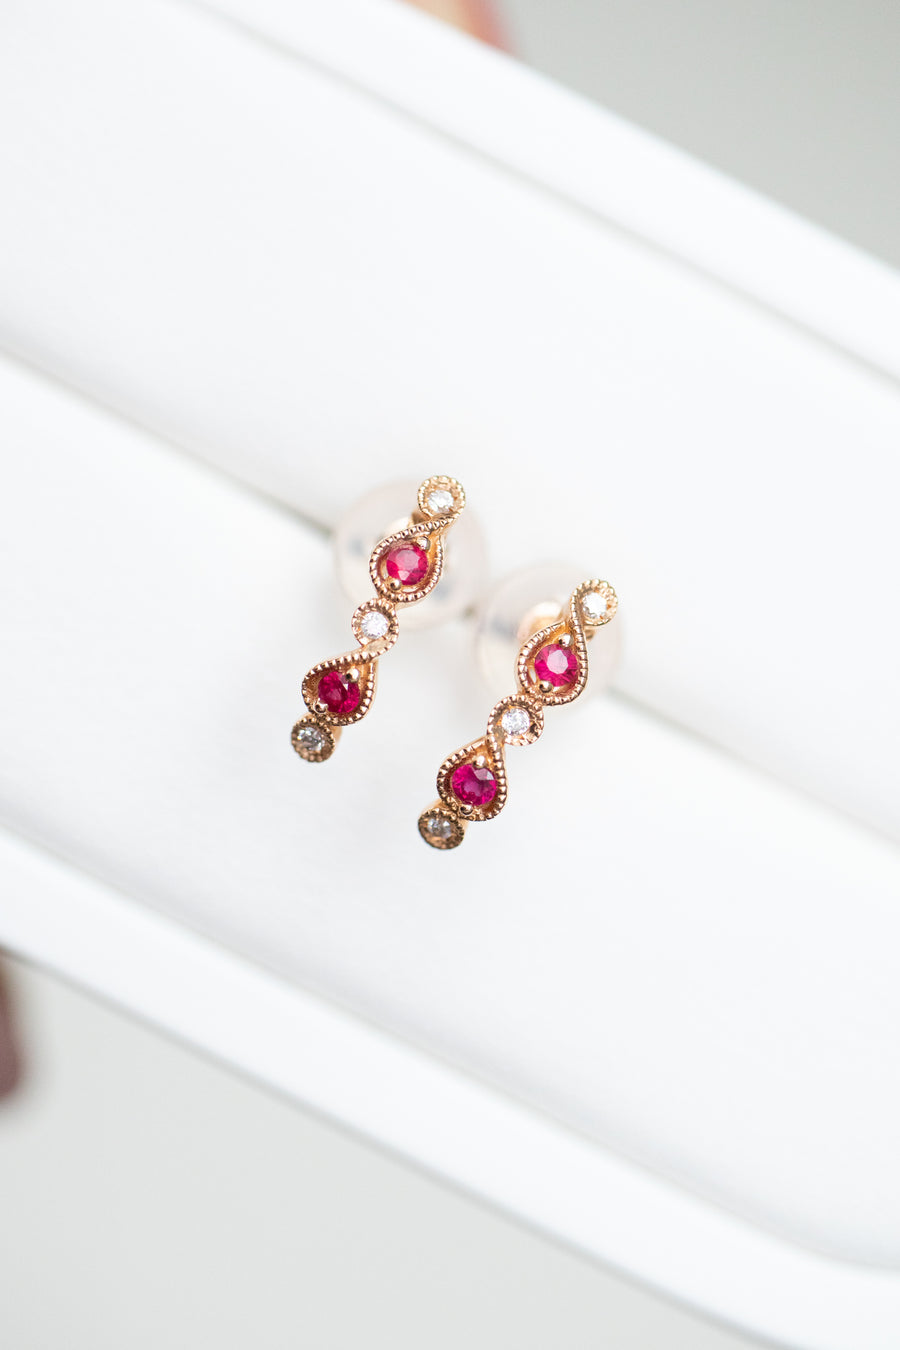 Total 0.08carat Ruby & 0.03carat Natural Diamonds 18K Rose Gold Earrings